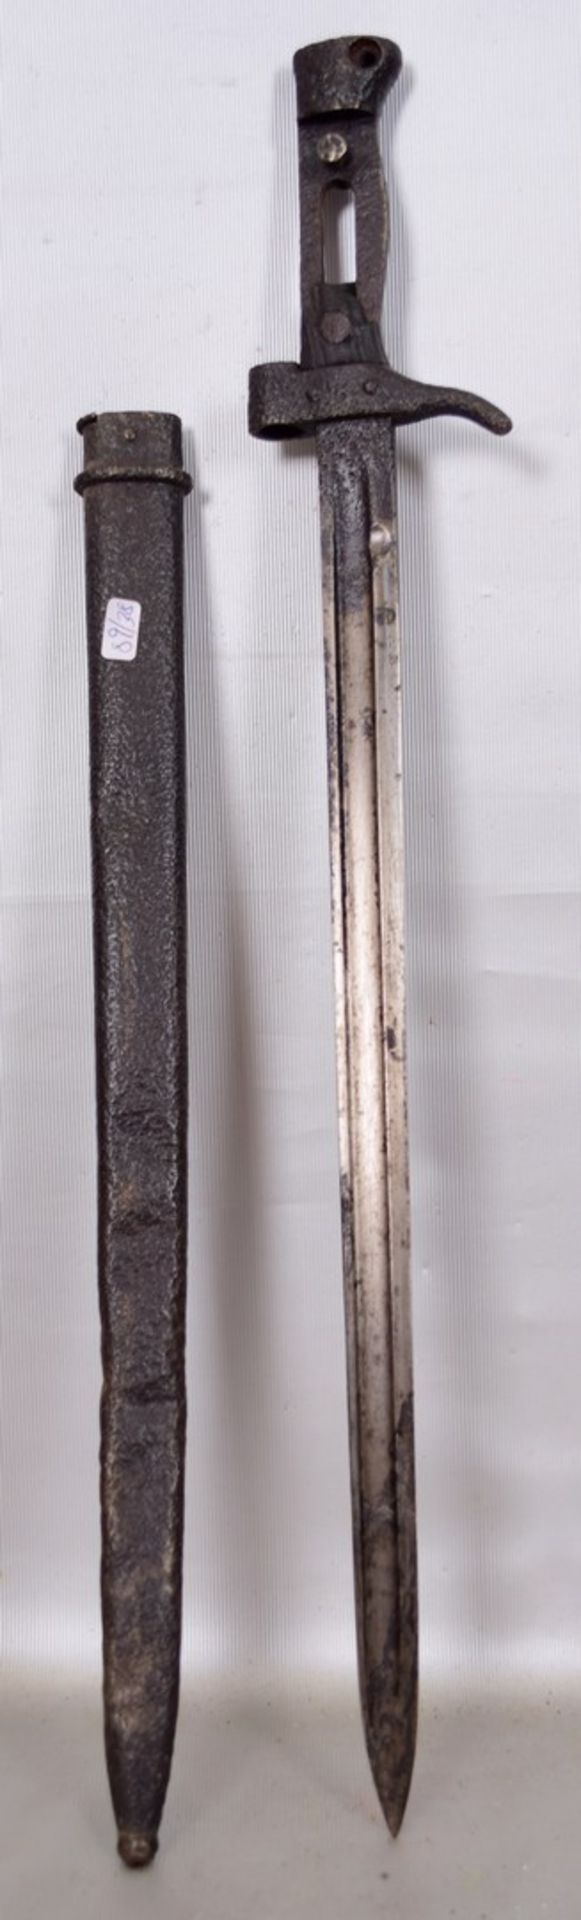 BajonettHolzgriff fehlt, L 52 cm, I. Weltkrieg